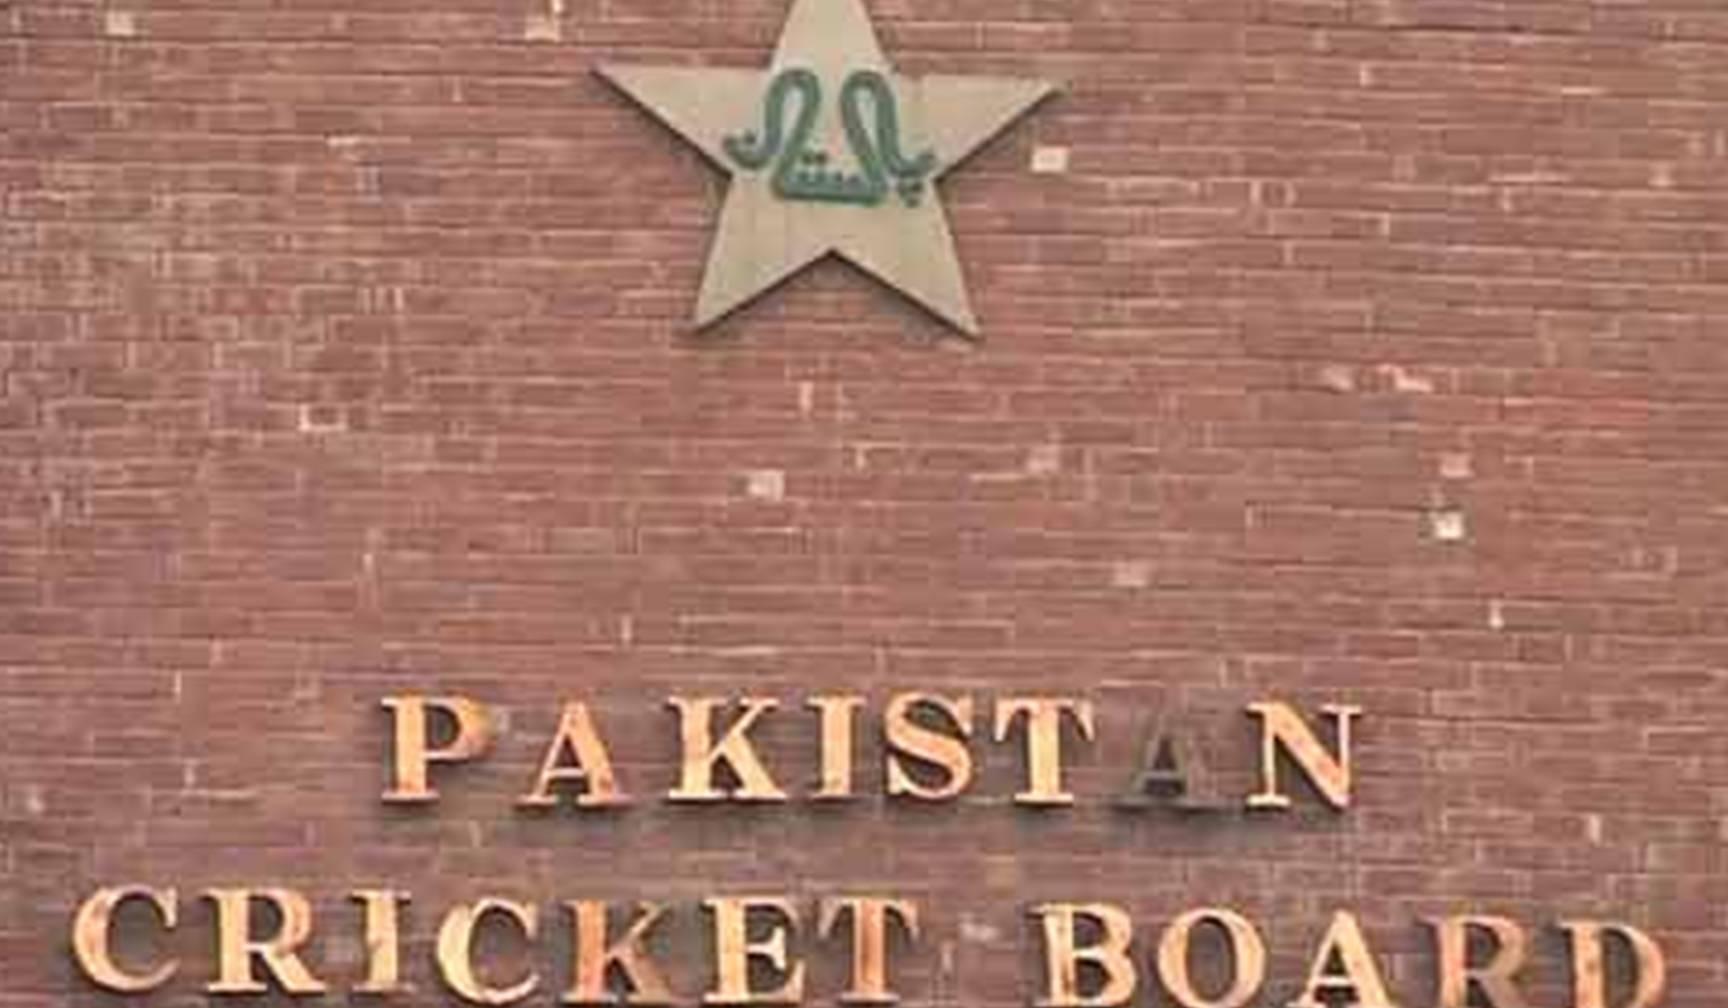 पाकिस्तान क्रिकेट बोर्ड के अध्यक्ष पद पर काबिज होने वाला है ये प्रमुख शख्स